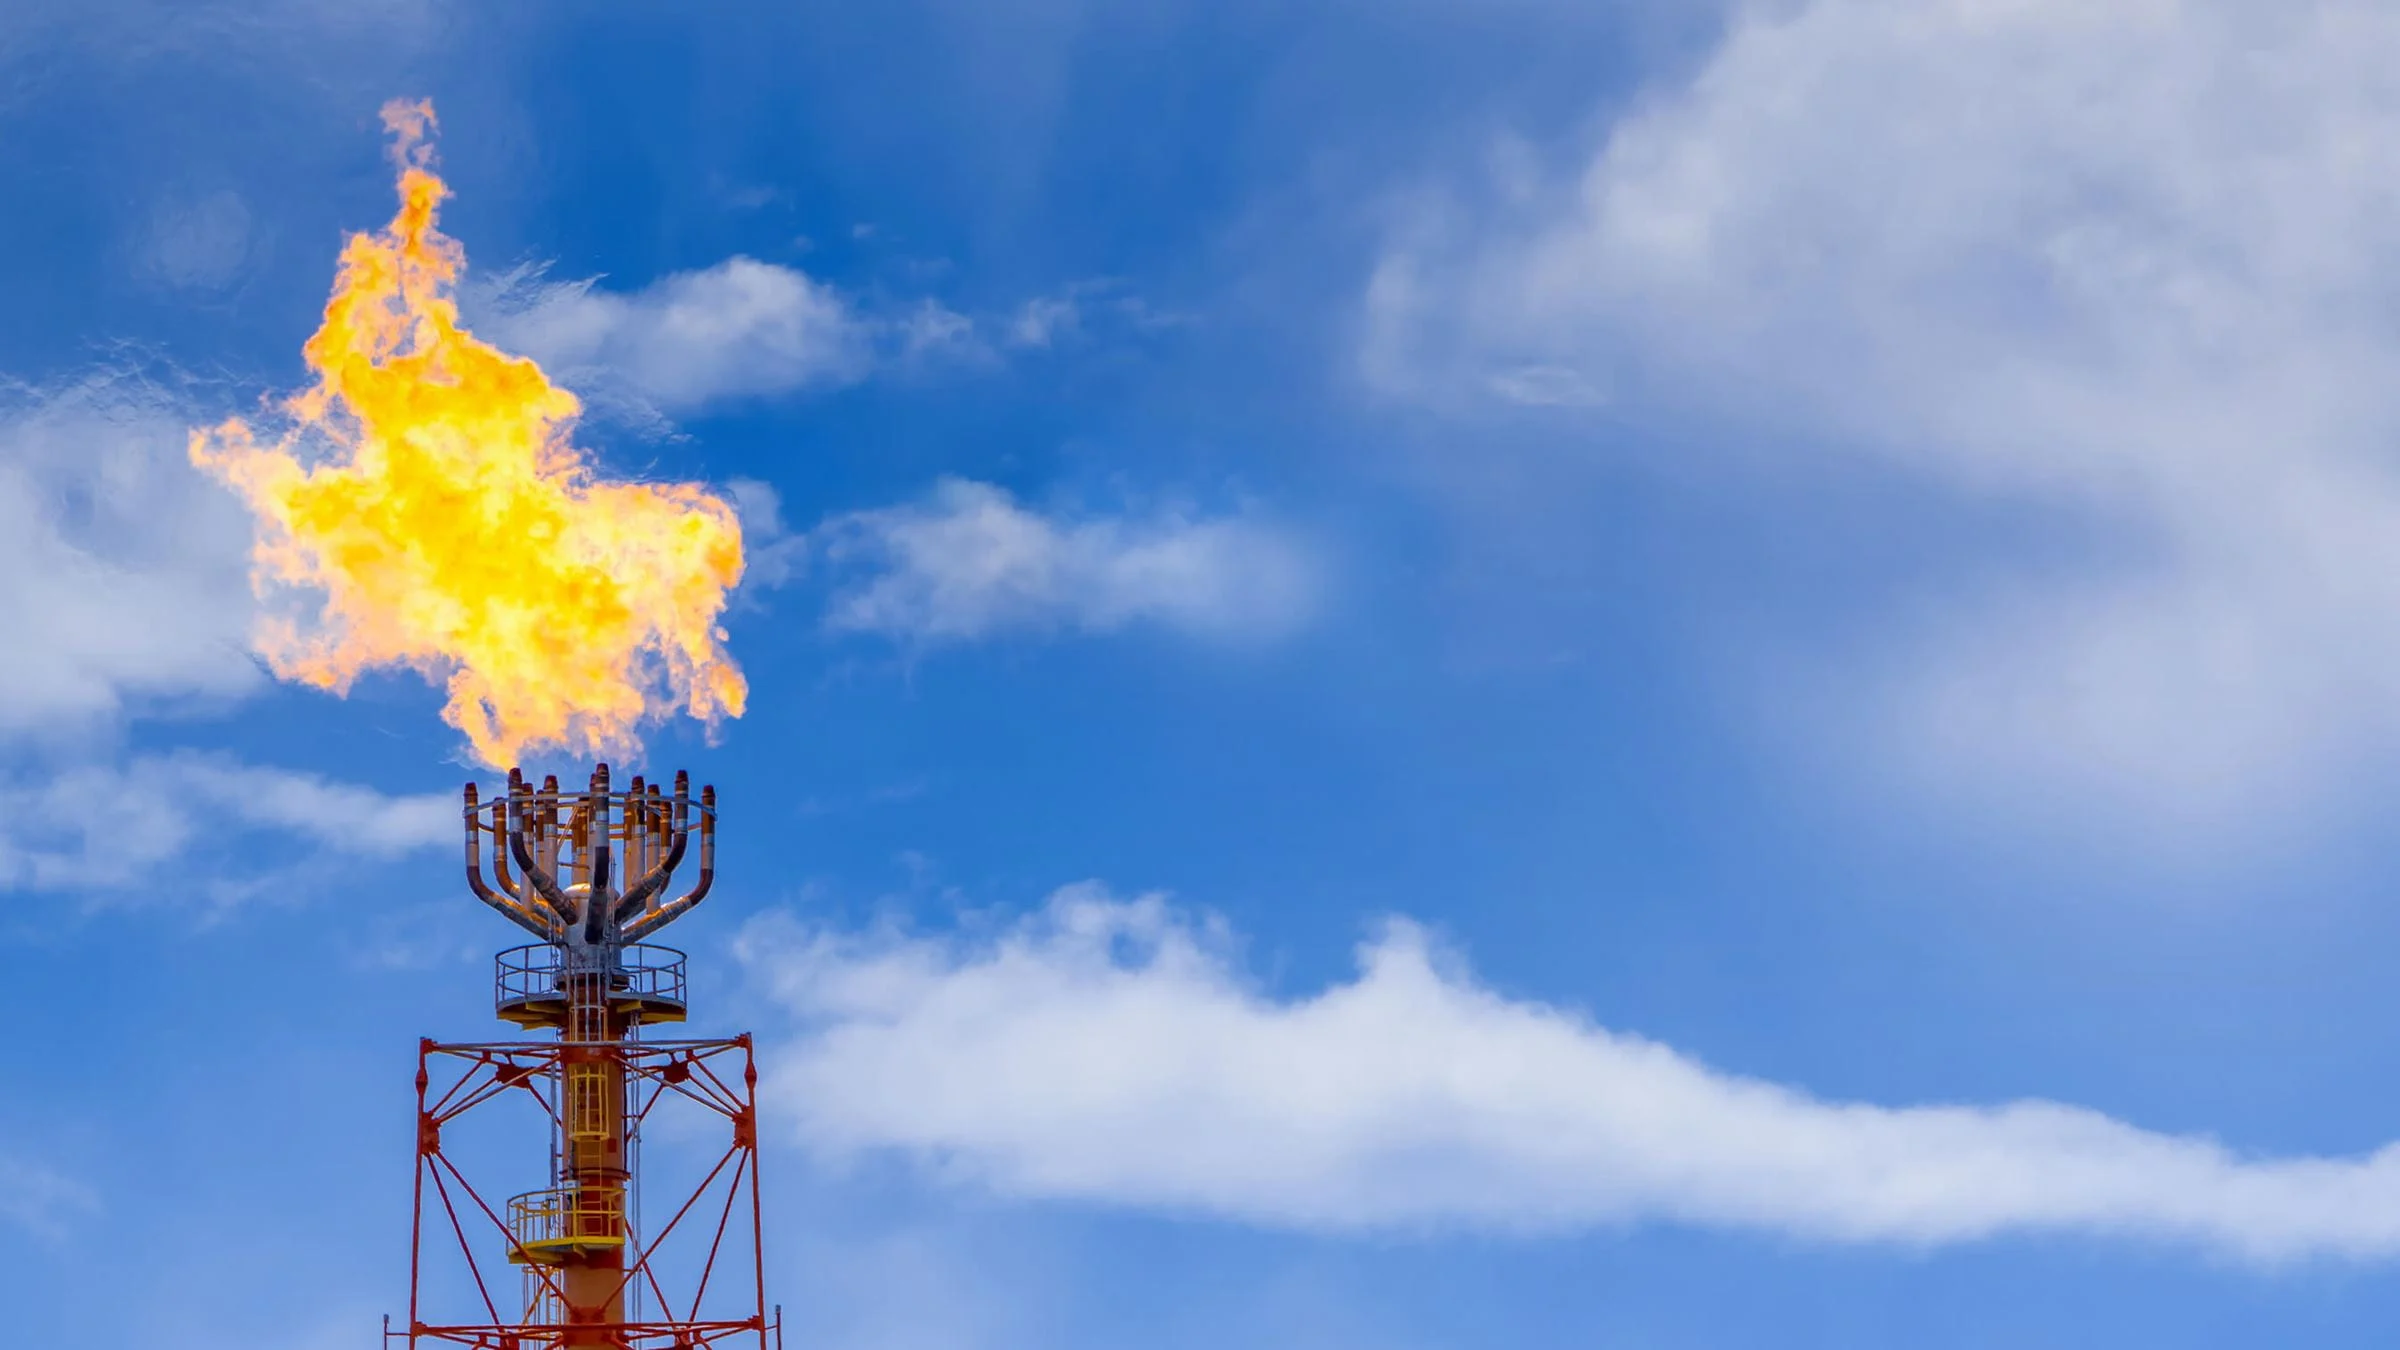 Califórnia processa petroleiras (ExxonMobil, Shell, bp, ConocoPhillips e API) por minimizarem danos causados por combustíveis fósseis. Na imagem: Refinaria com flare aberto para queima do metano (Foto: Aggreko)